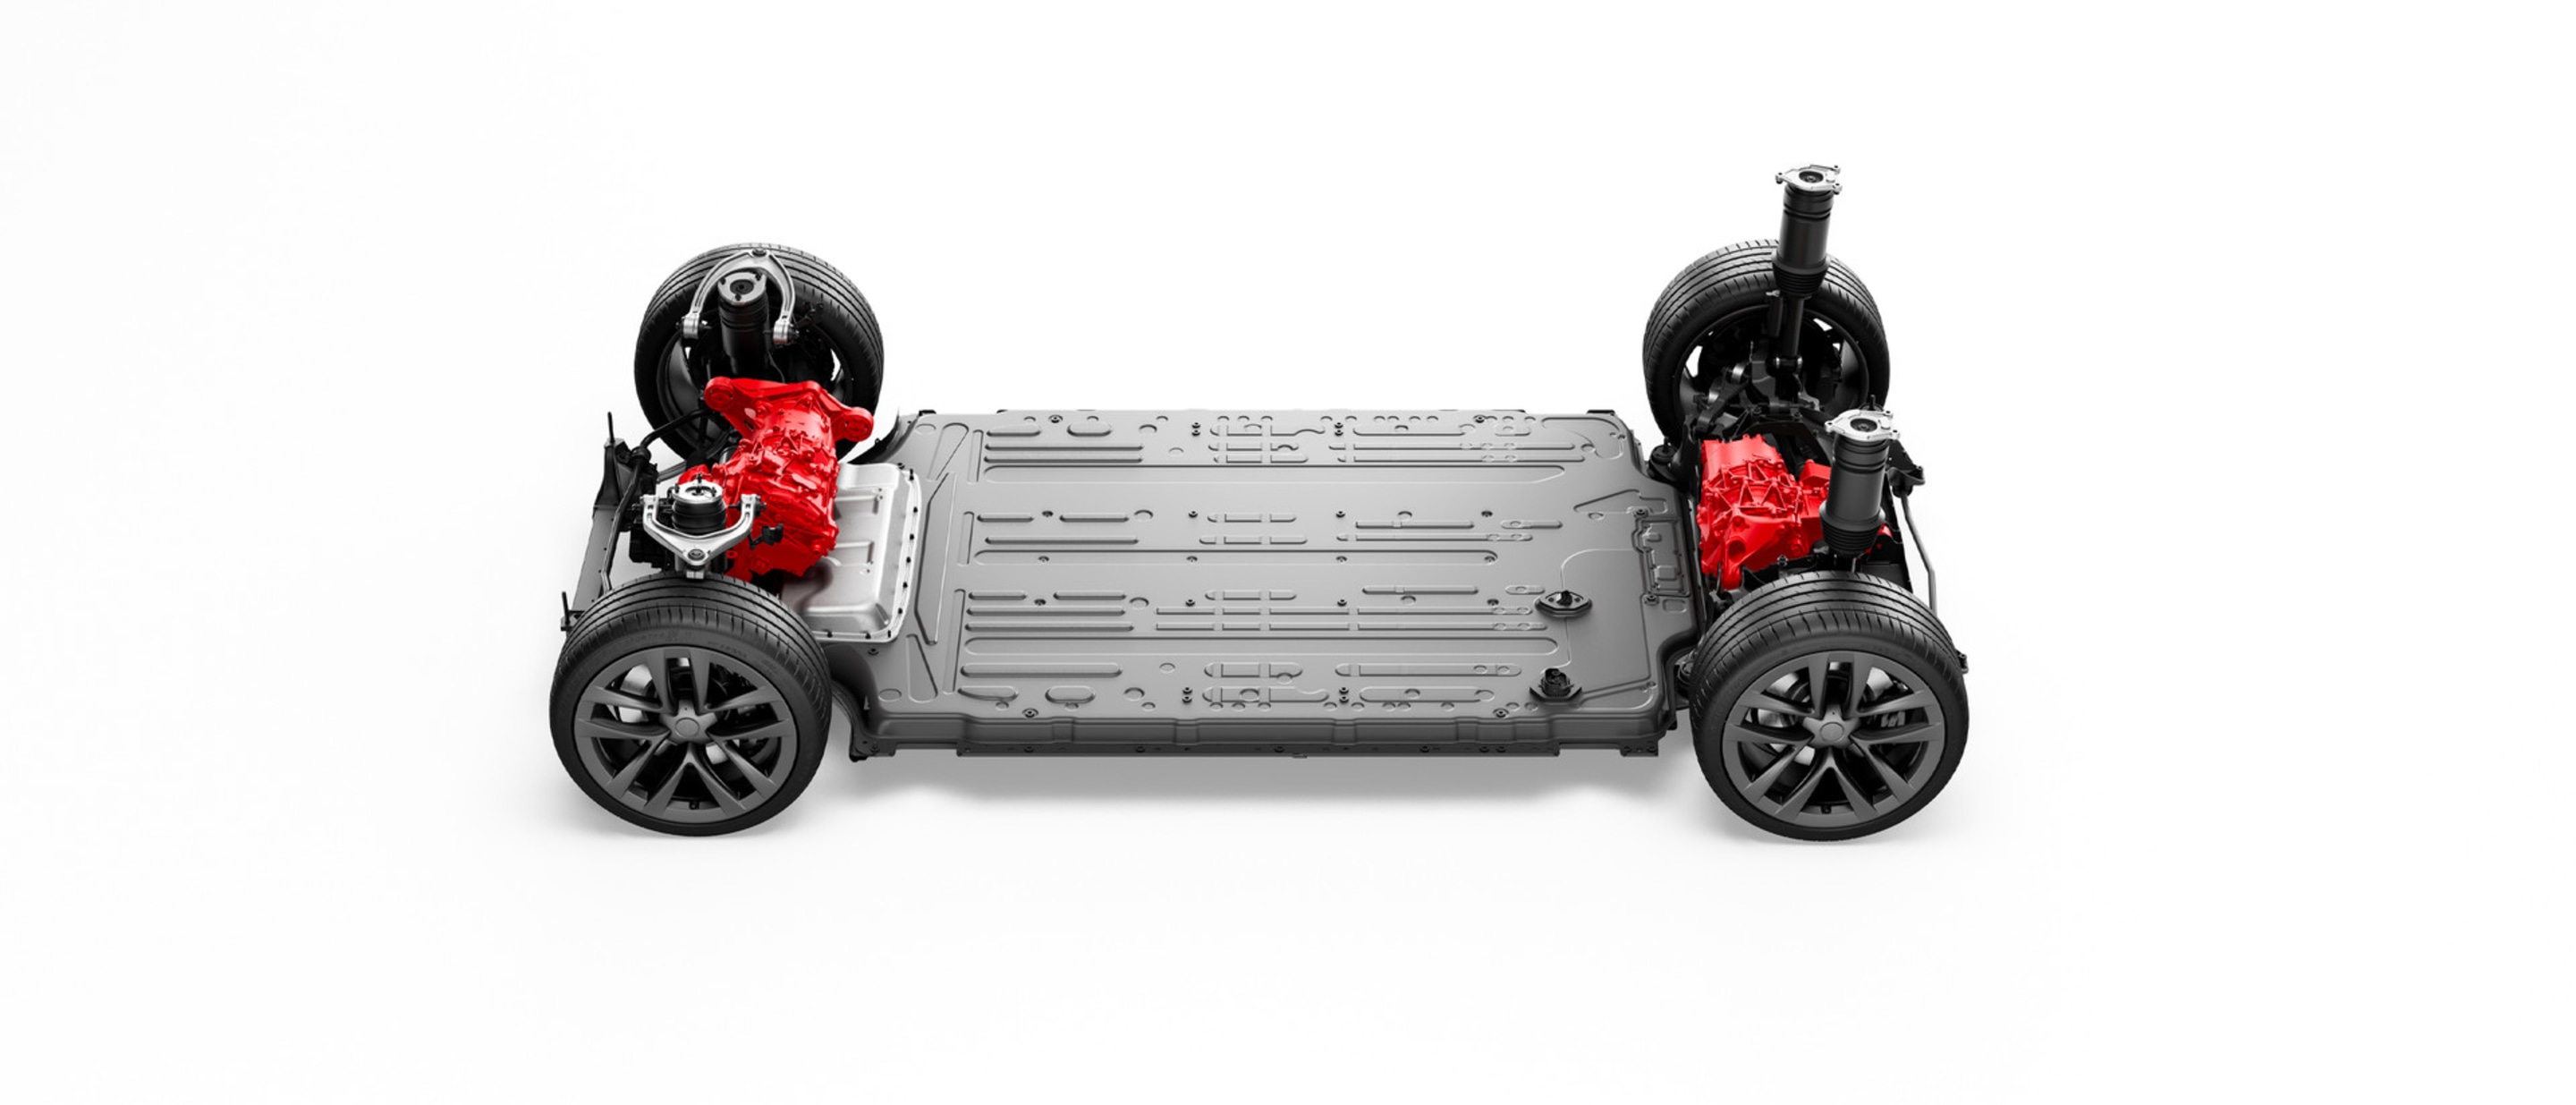 Tren motriz eléctrico y batería de un Model S con motor dual y tracción integral